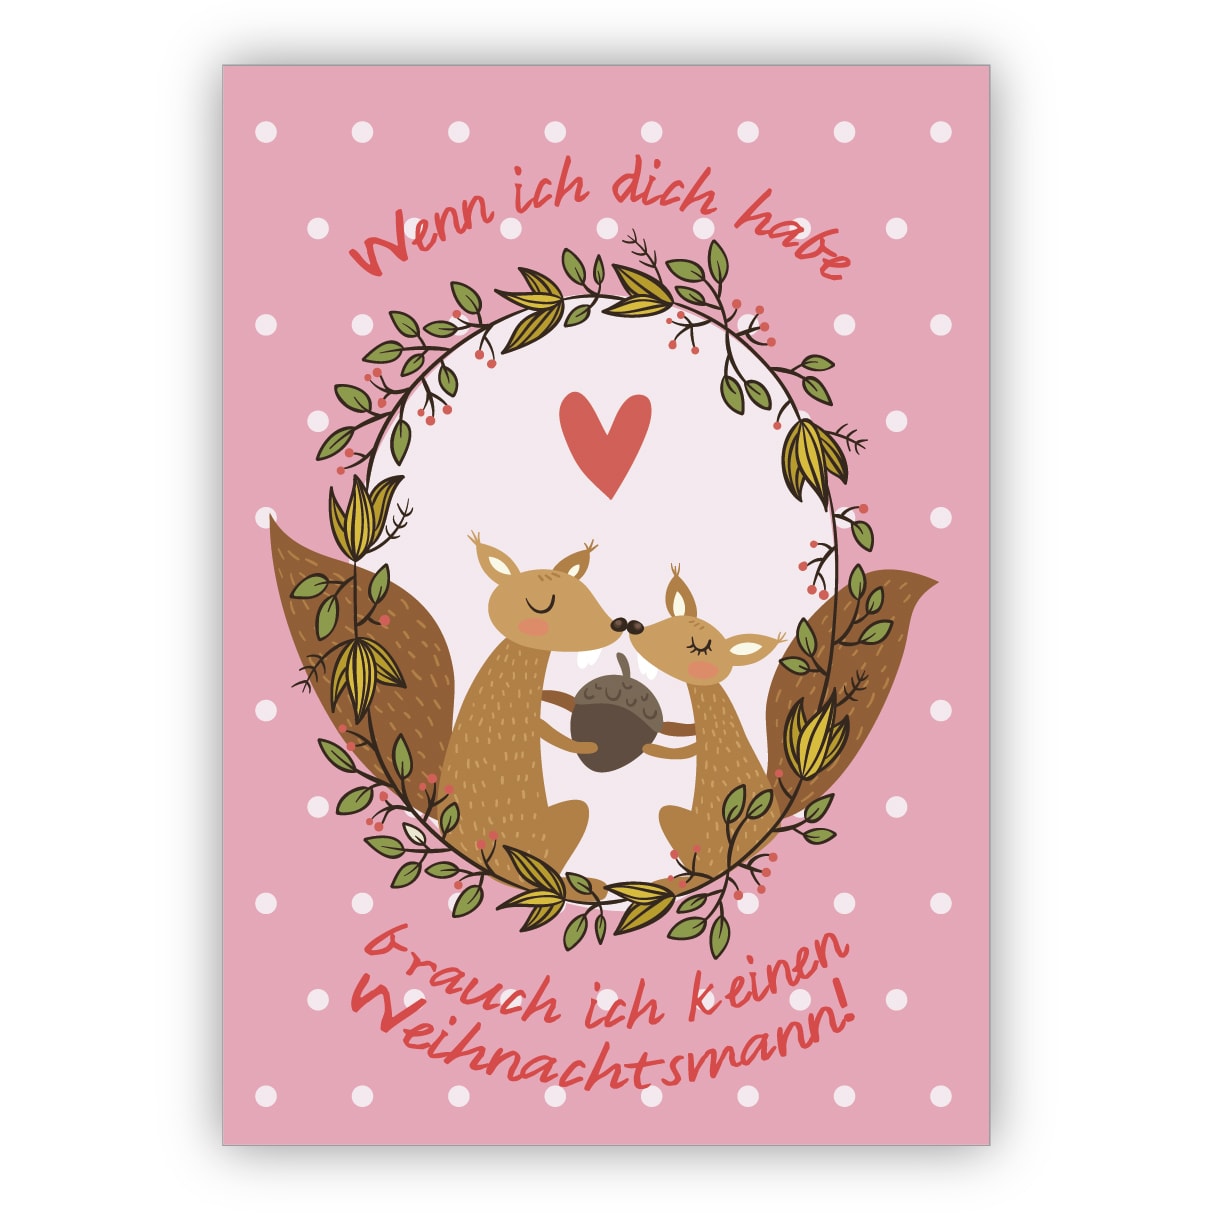 Einmalige Liebes Weihnachtskarte mit Eichhörnchen auf rosa: Wenn ich dich habe brauch ich keinen Weihnachtsmann